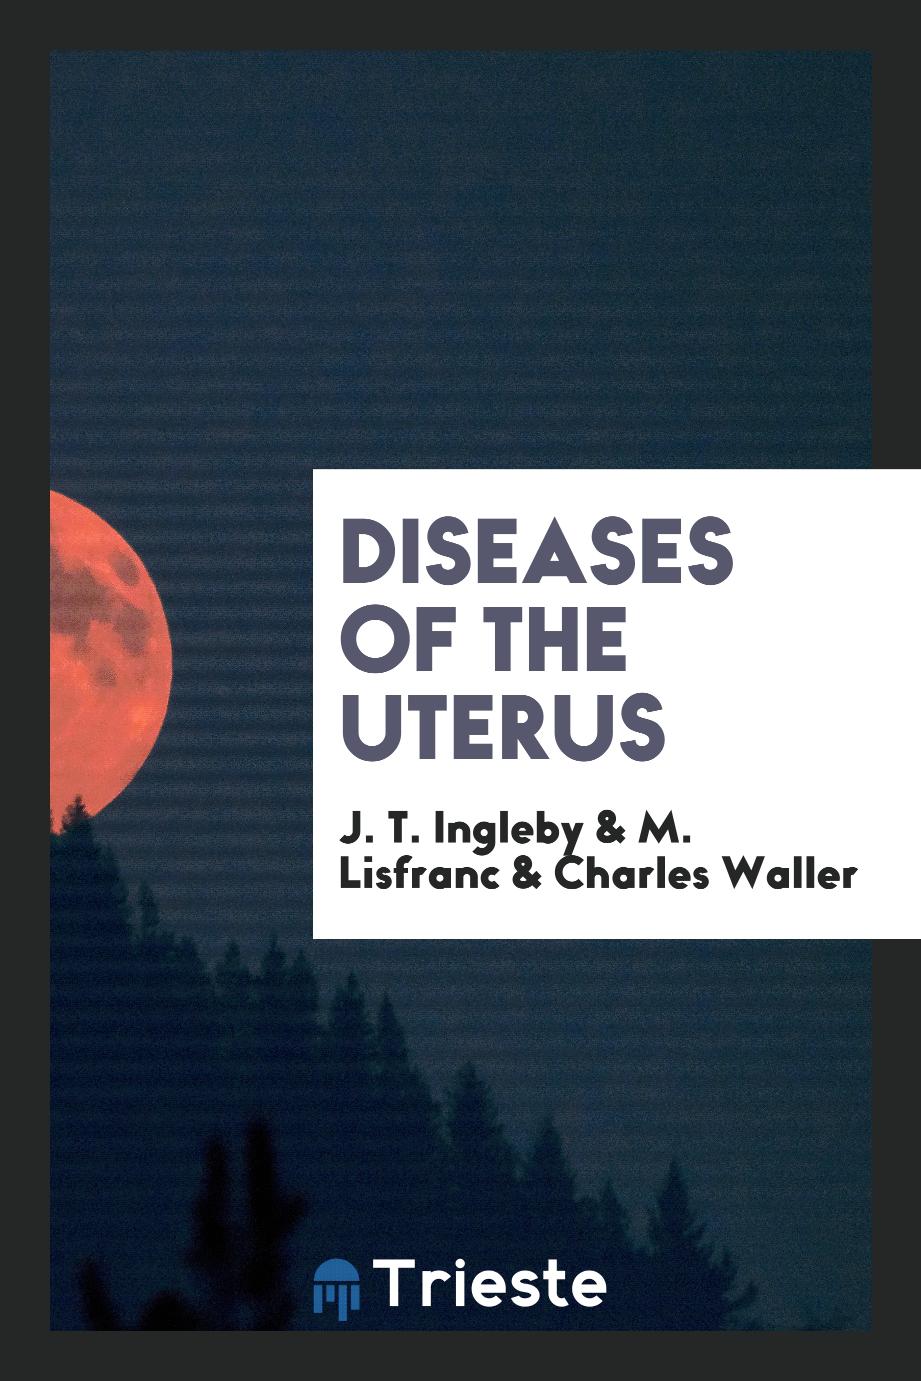 Diseases of the uterus